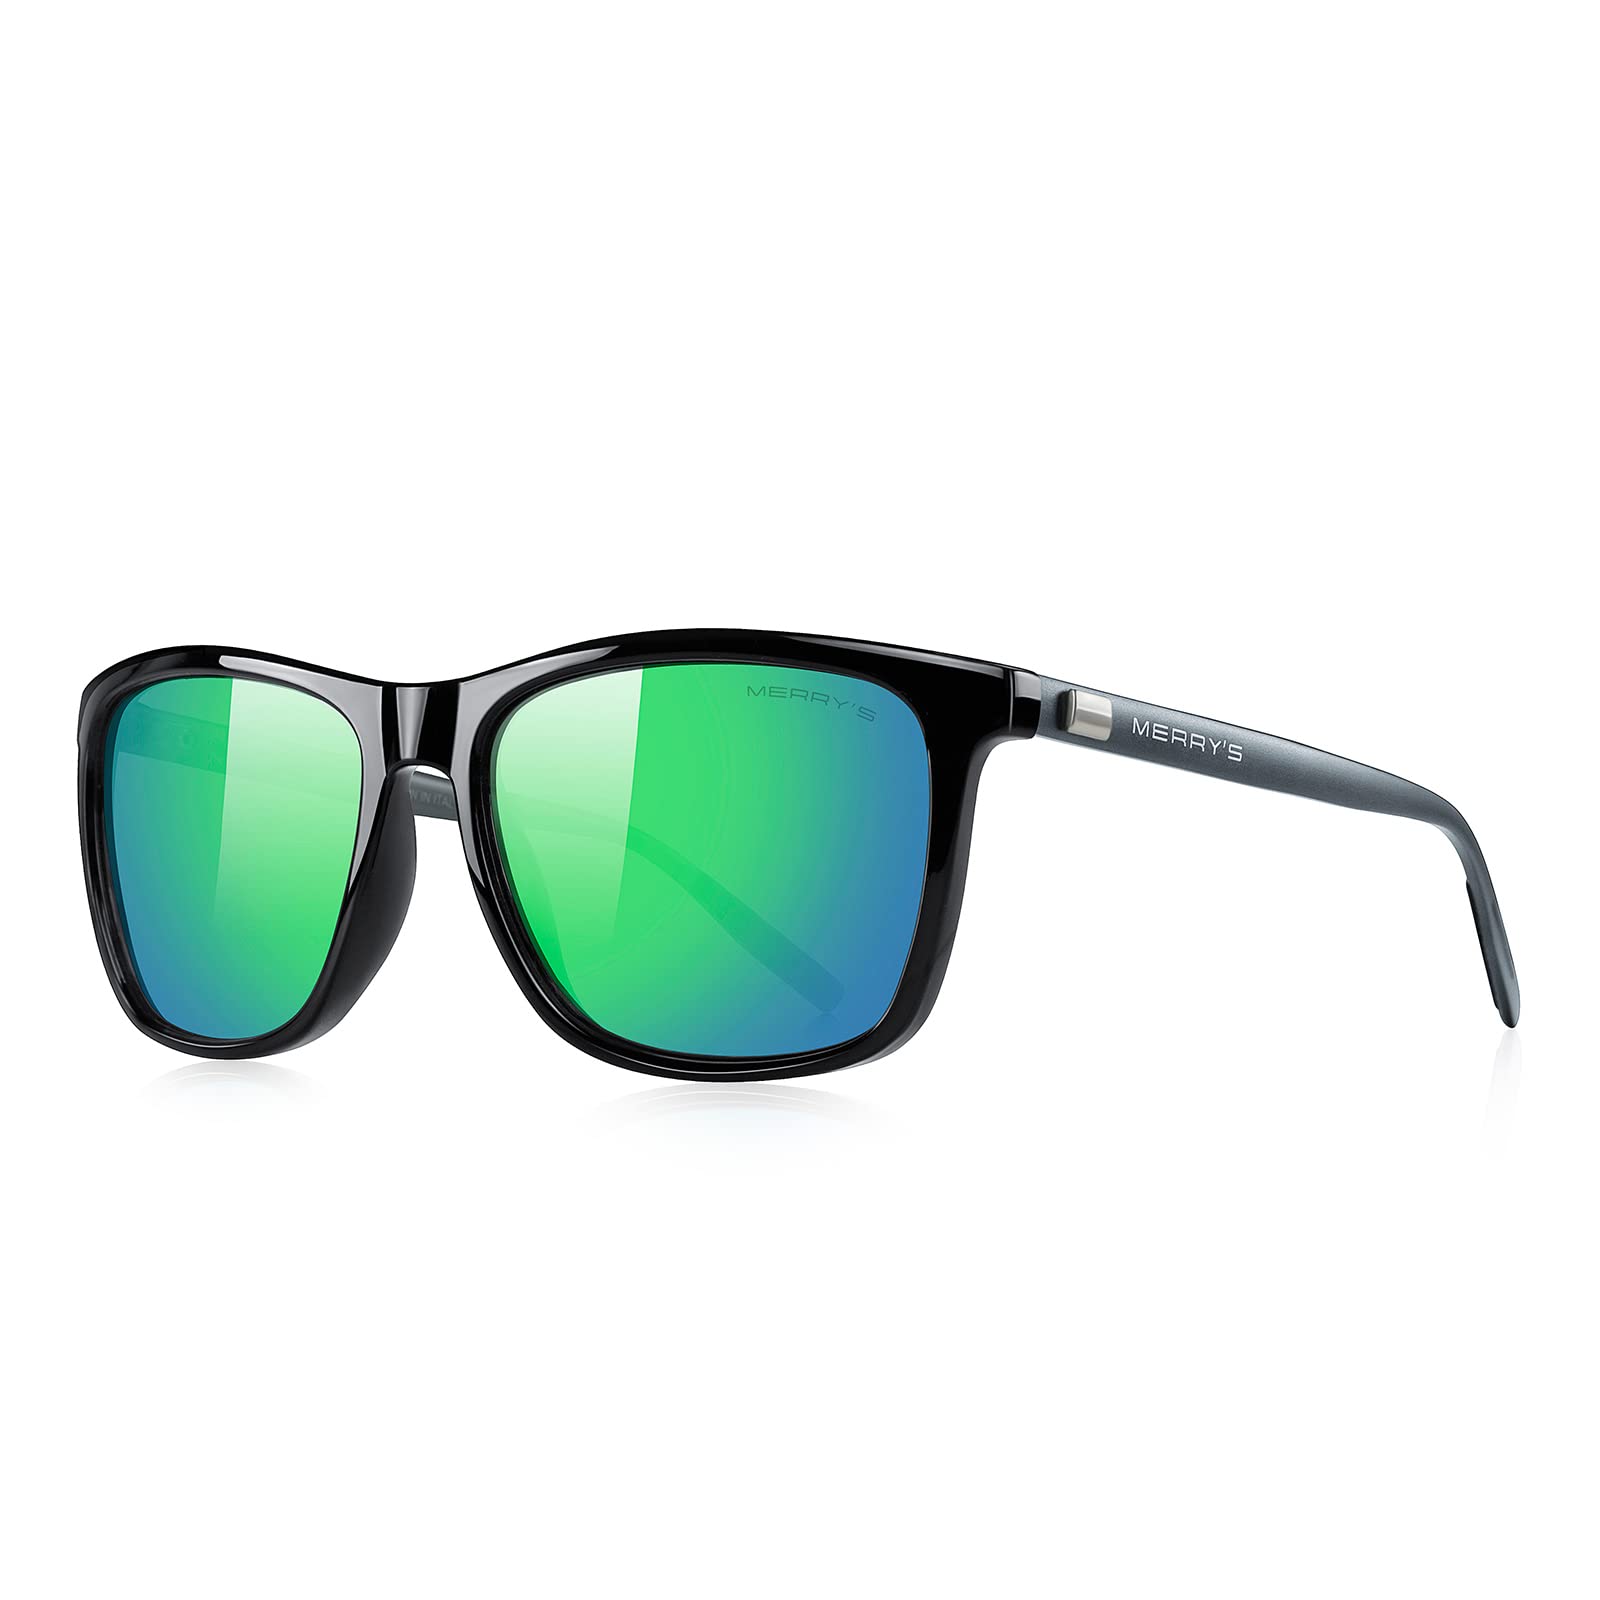 MERRY'S Unisex Polarized Aluminum Sunglasses Vintage Sun Glasses For Men/Women S8286